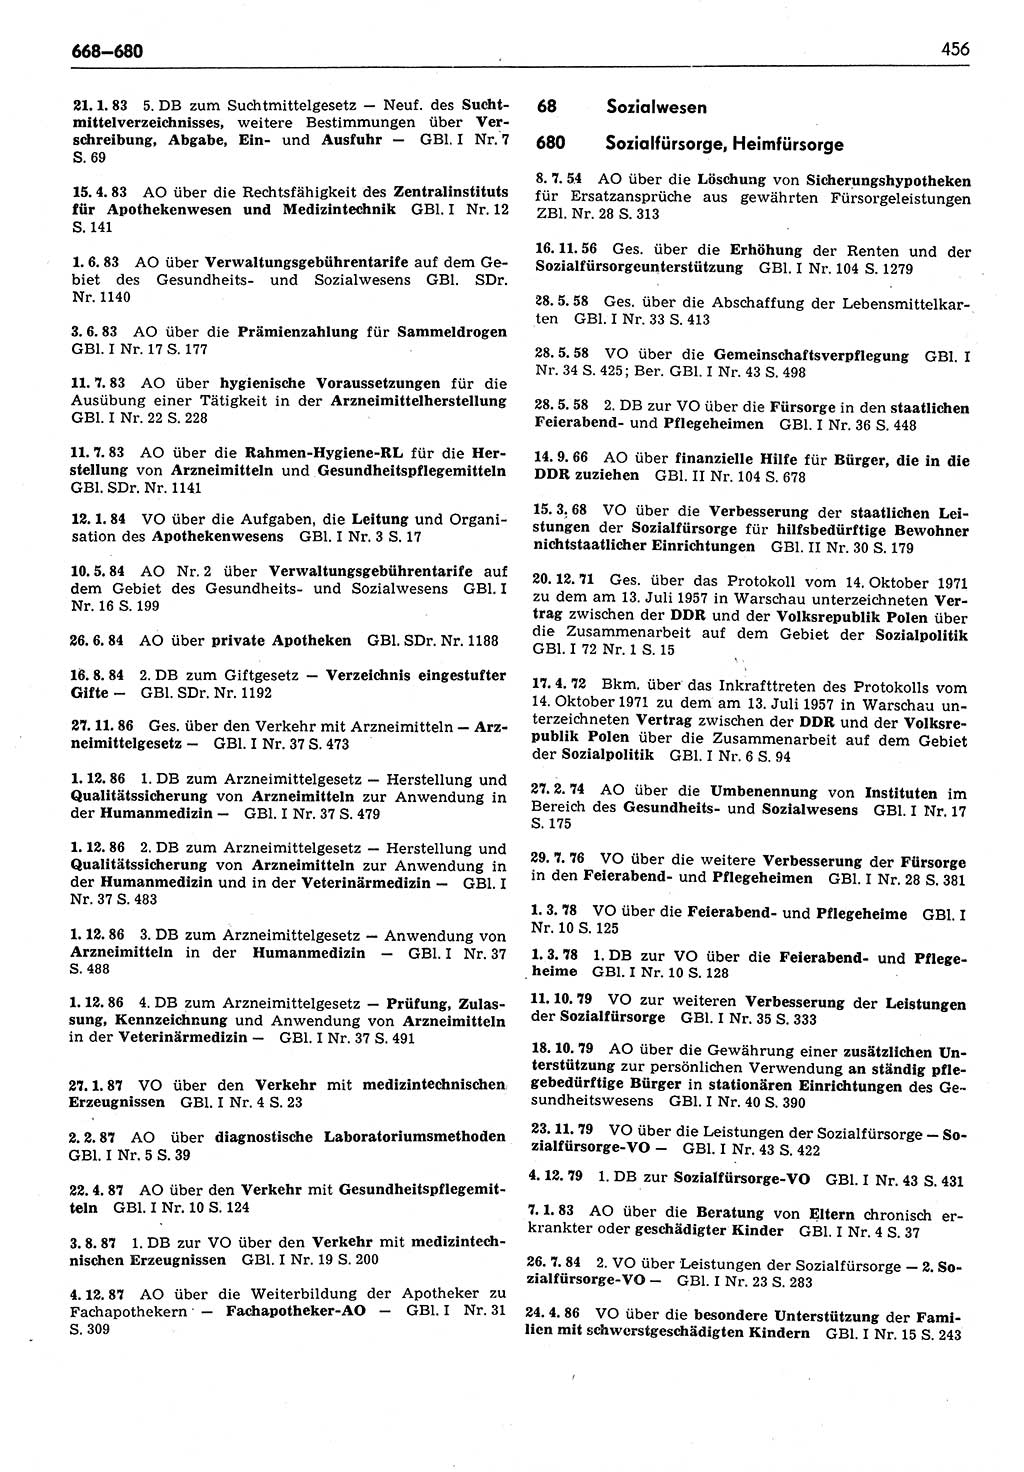 Das geltende Recht der Deutschen Demokratischen Republik (DDR) 1949-1988, Seite 456 (Gelt. R. DDR 1949-1988, S. 456)